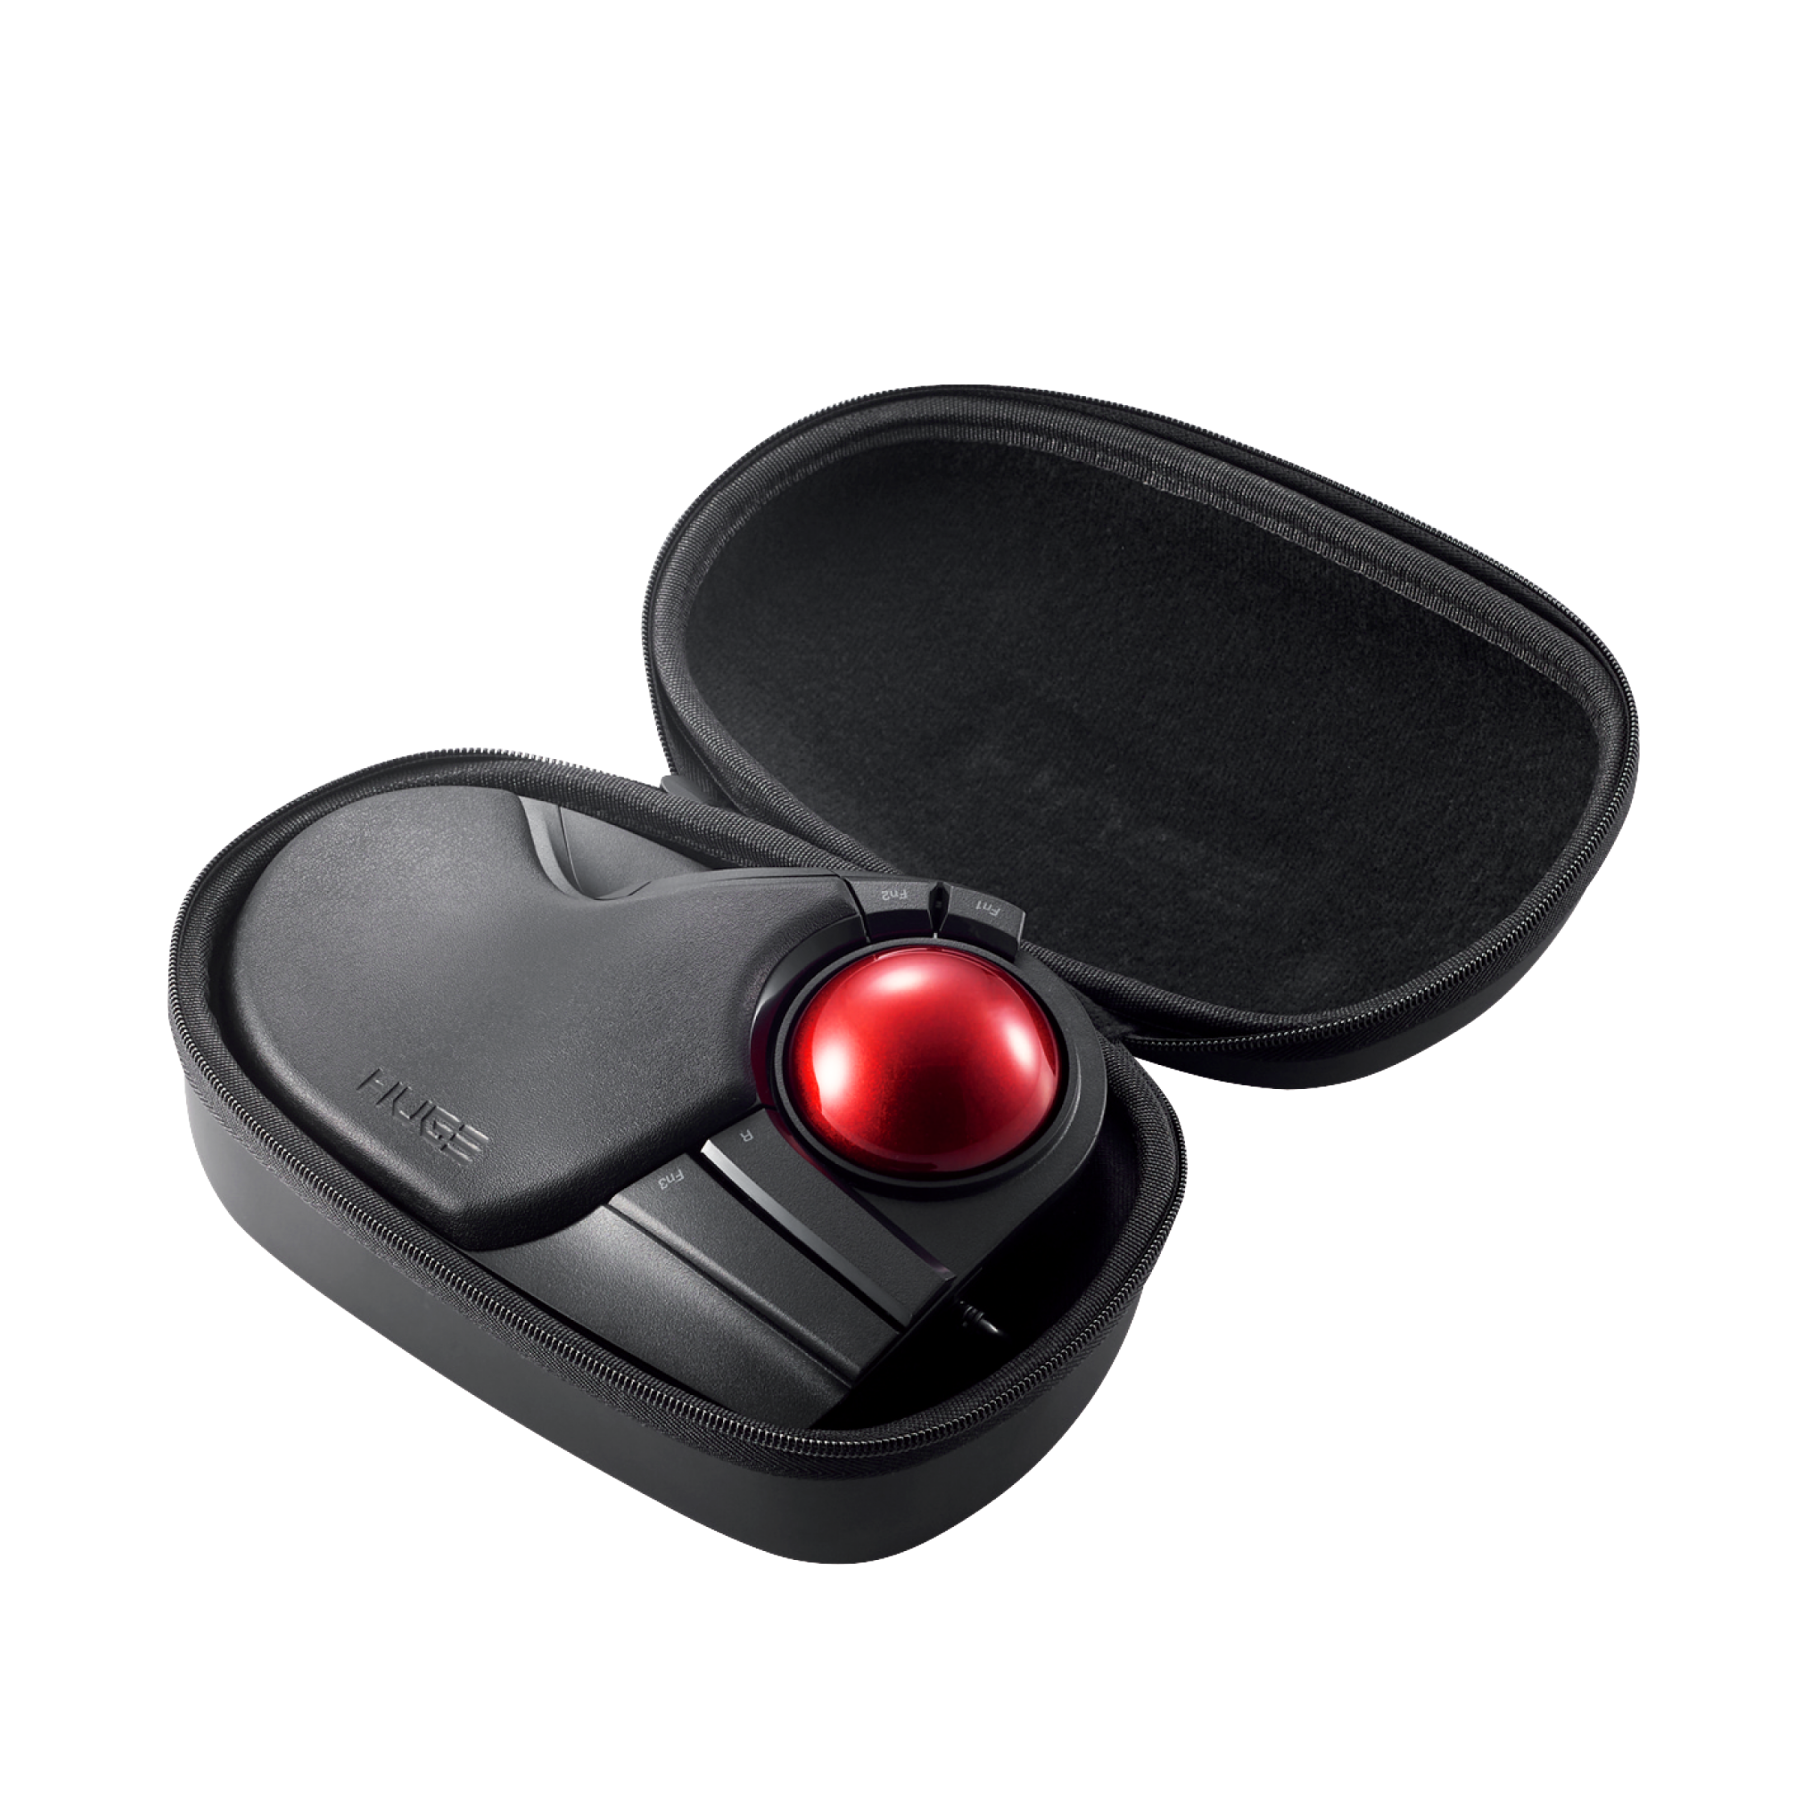 HUGE Trackball Mouse Case